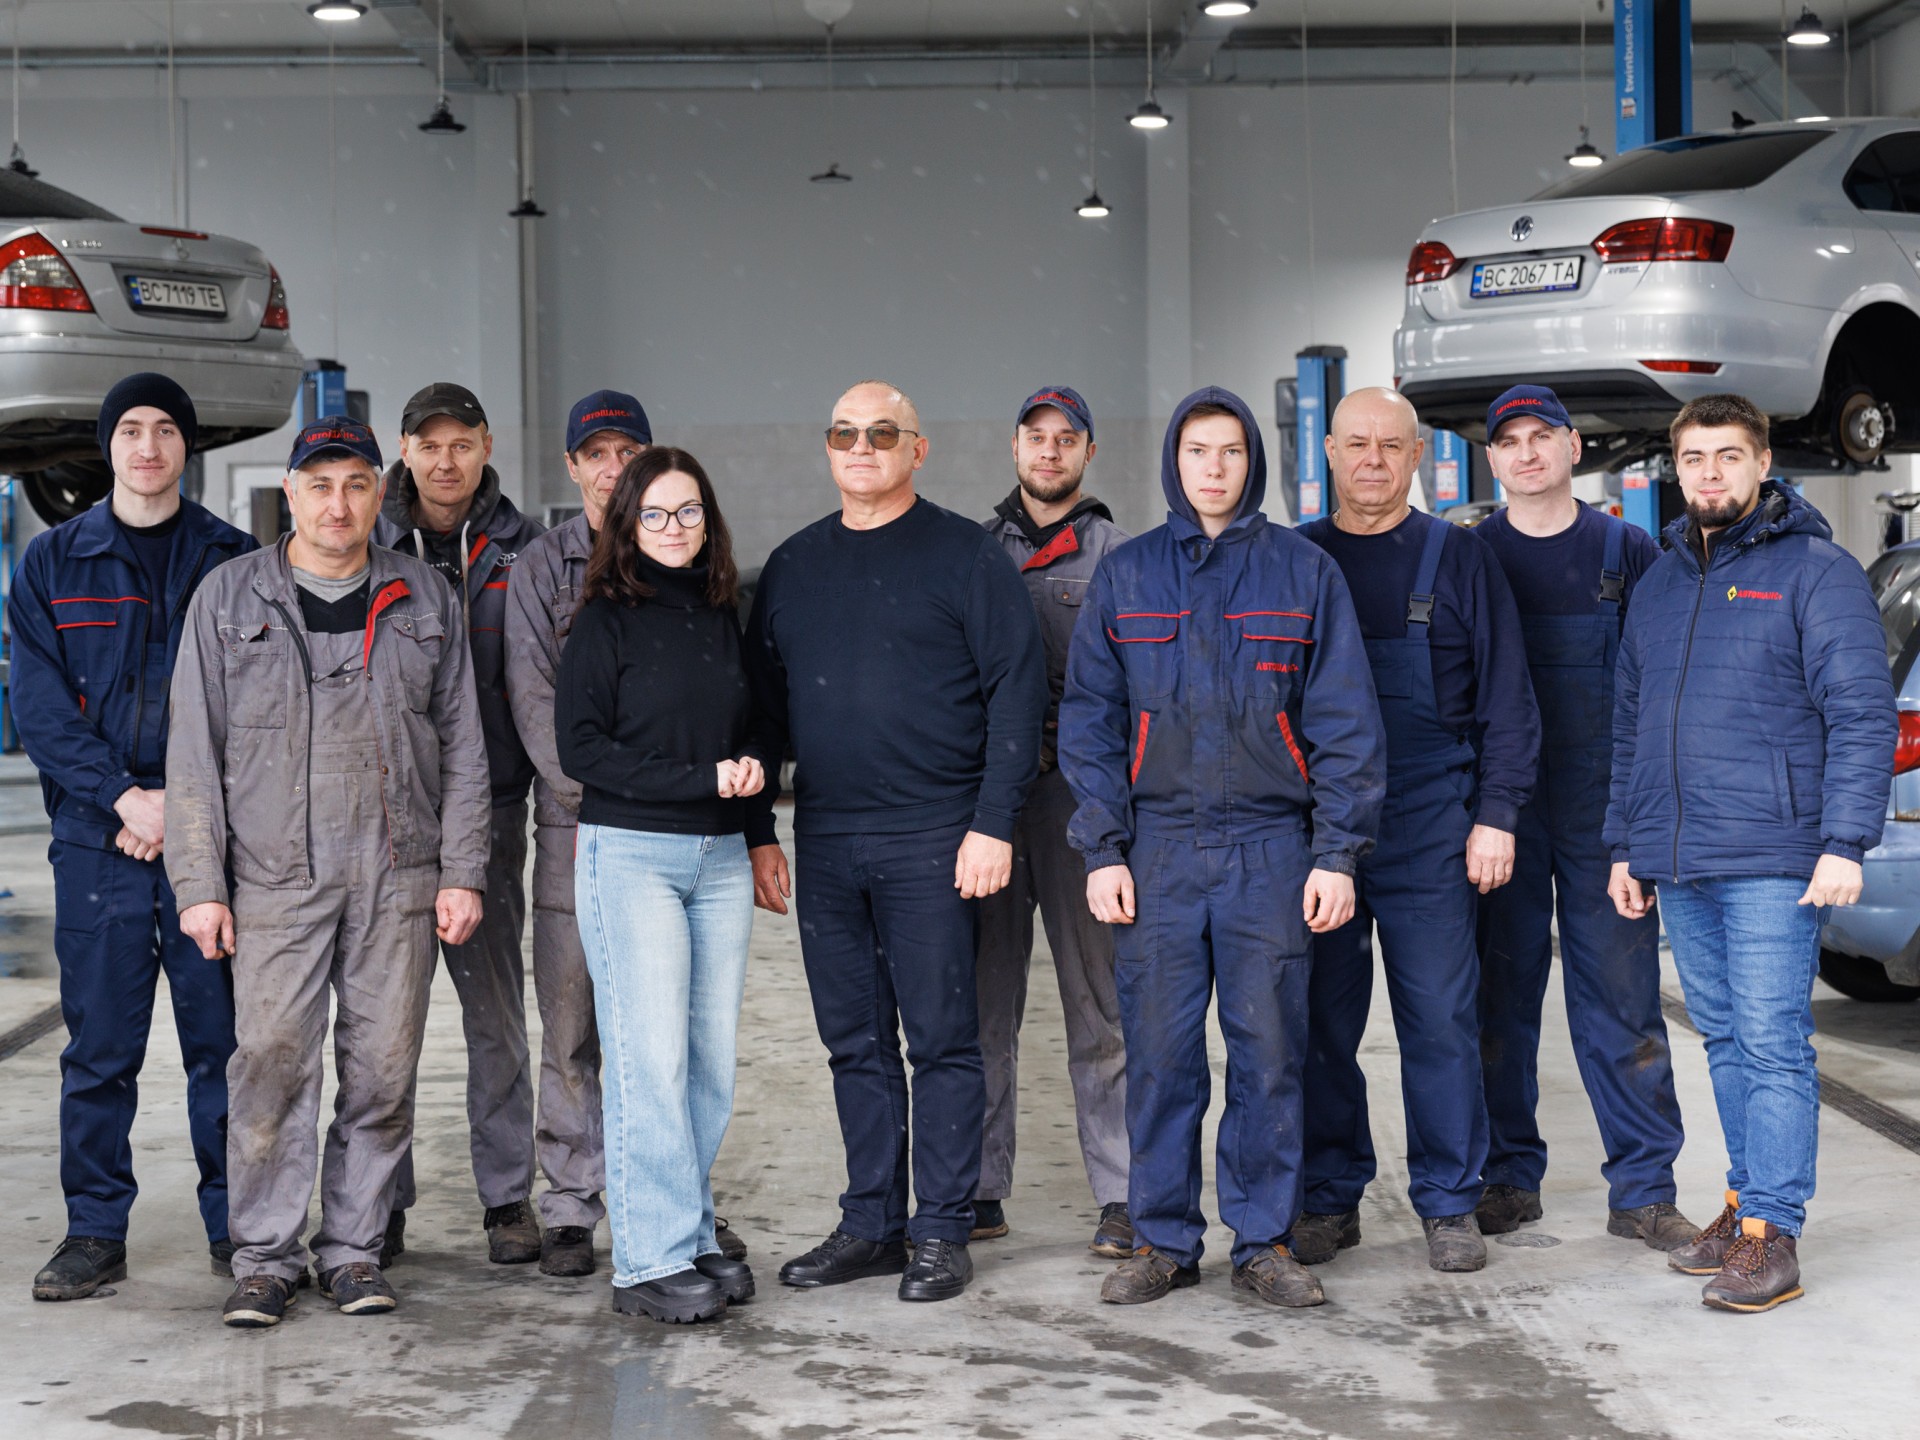 Gruppenfoto von Mitarbeitern r Autowerkstatt in der Region Lwiw in der Ukraine